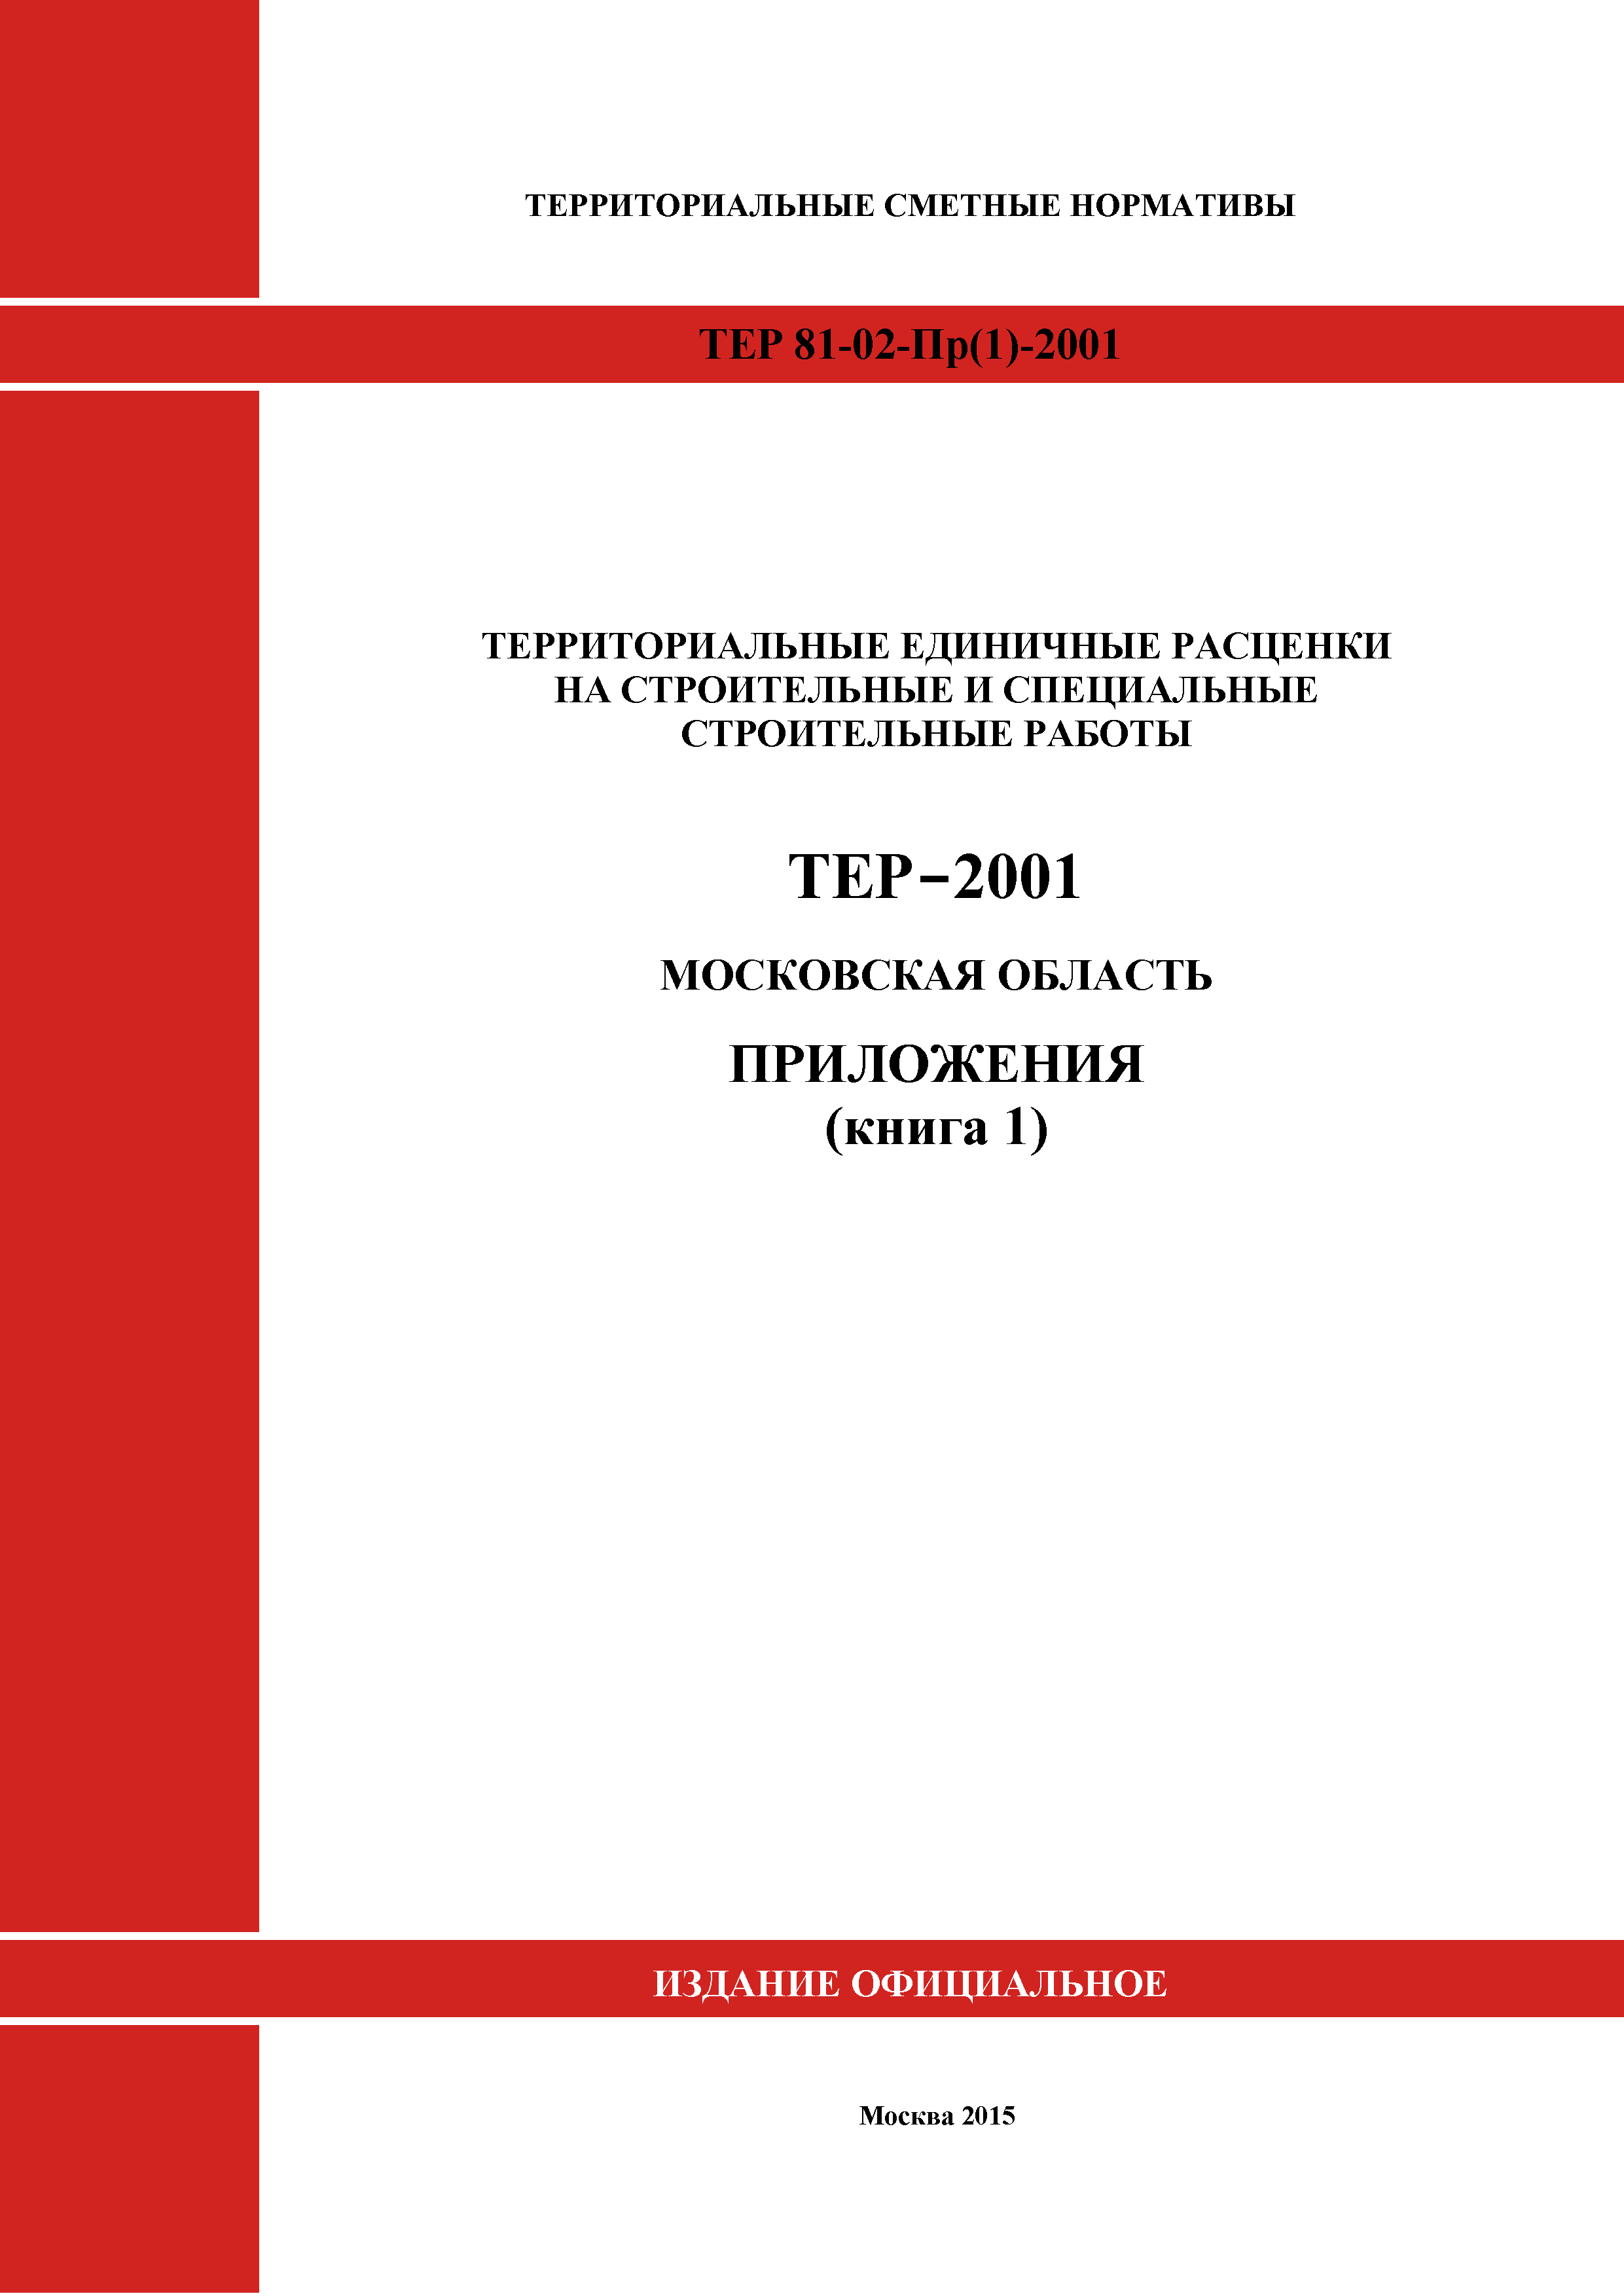 ТЕР ПР(1)-2001 Московской области